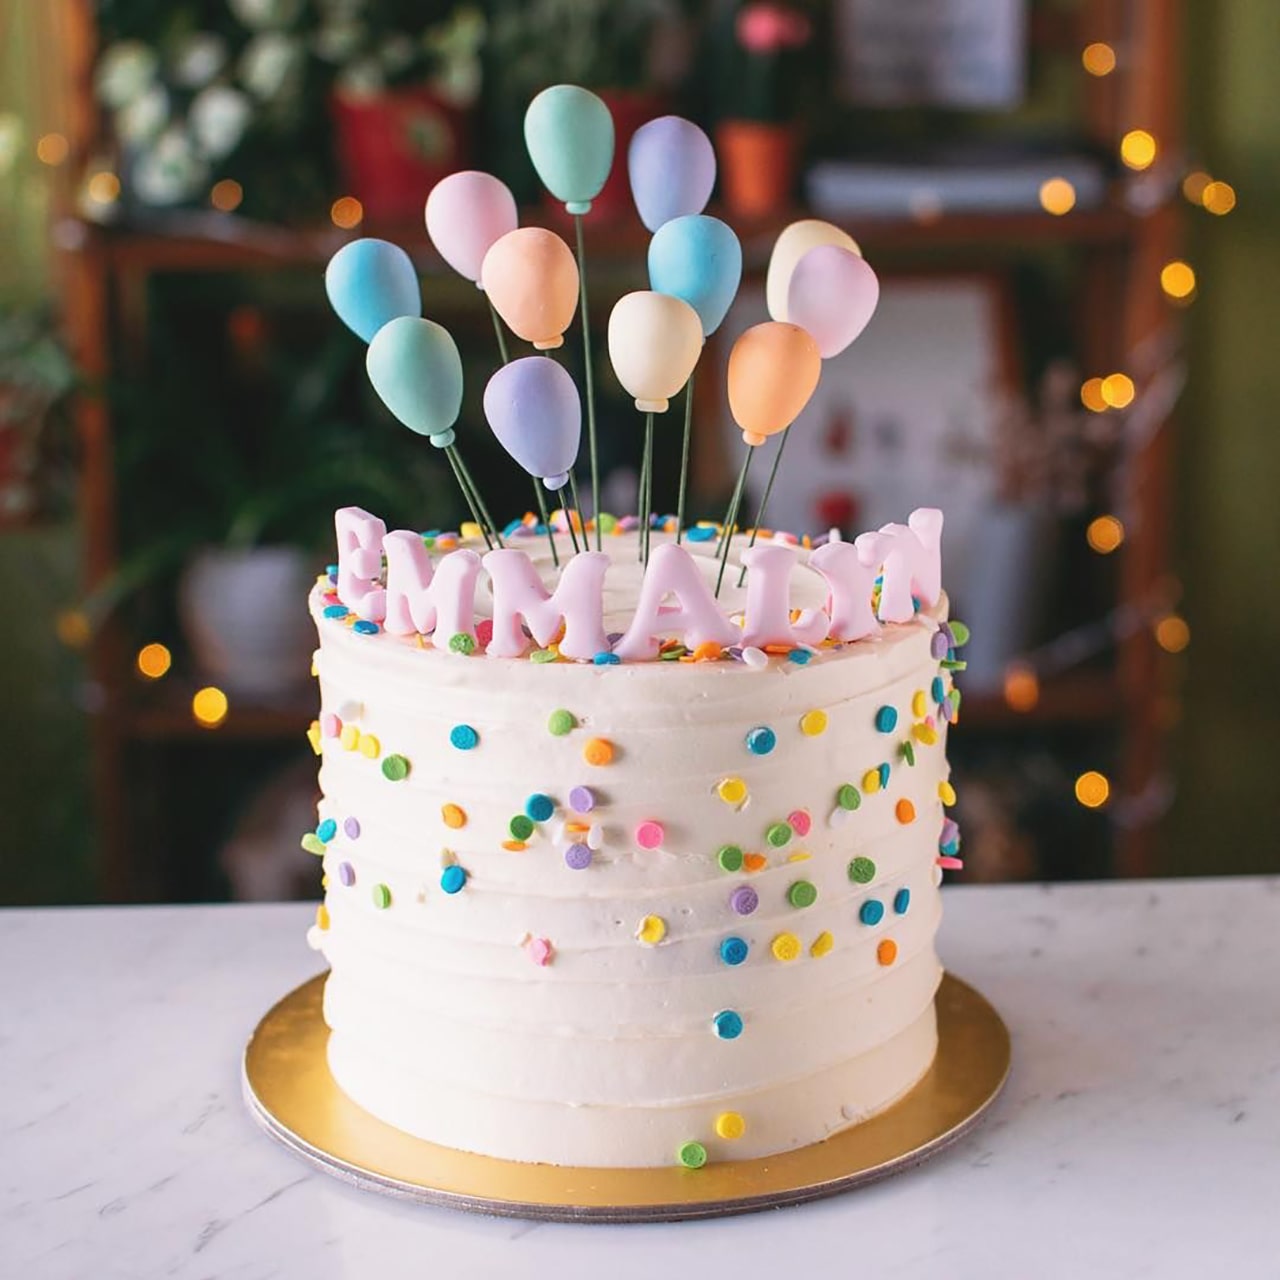 Gợi ý những chiếc bánh sinh nhật cỡ nhỏ xinh xắn cho sinh nhật gia đình 